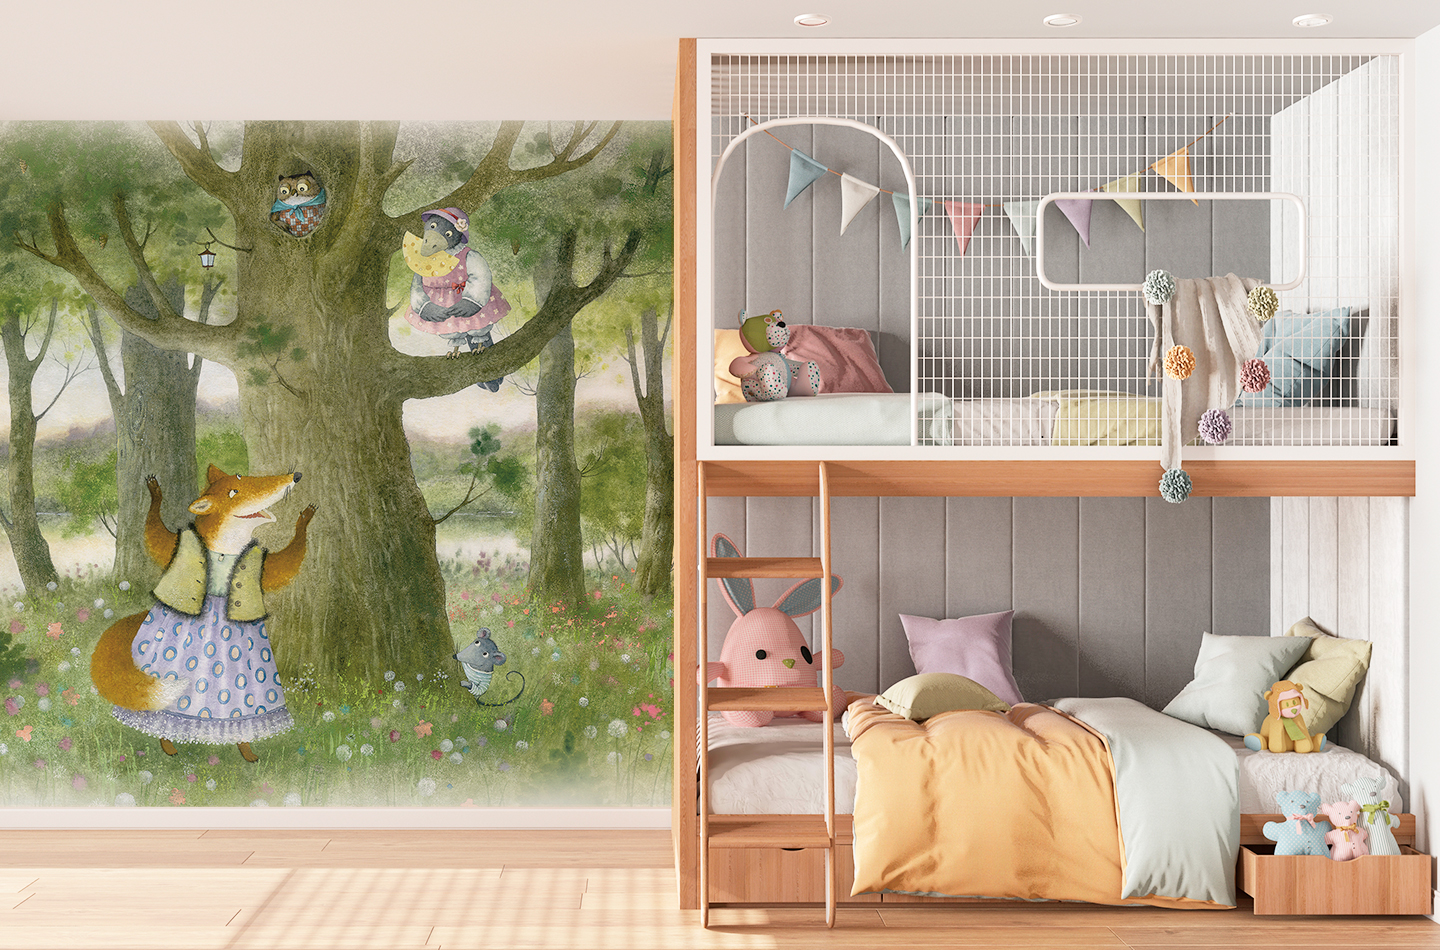 Дизайн детской комнаты для двоих детей: идеи и фото